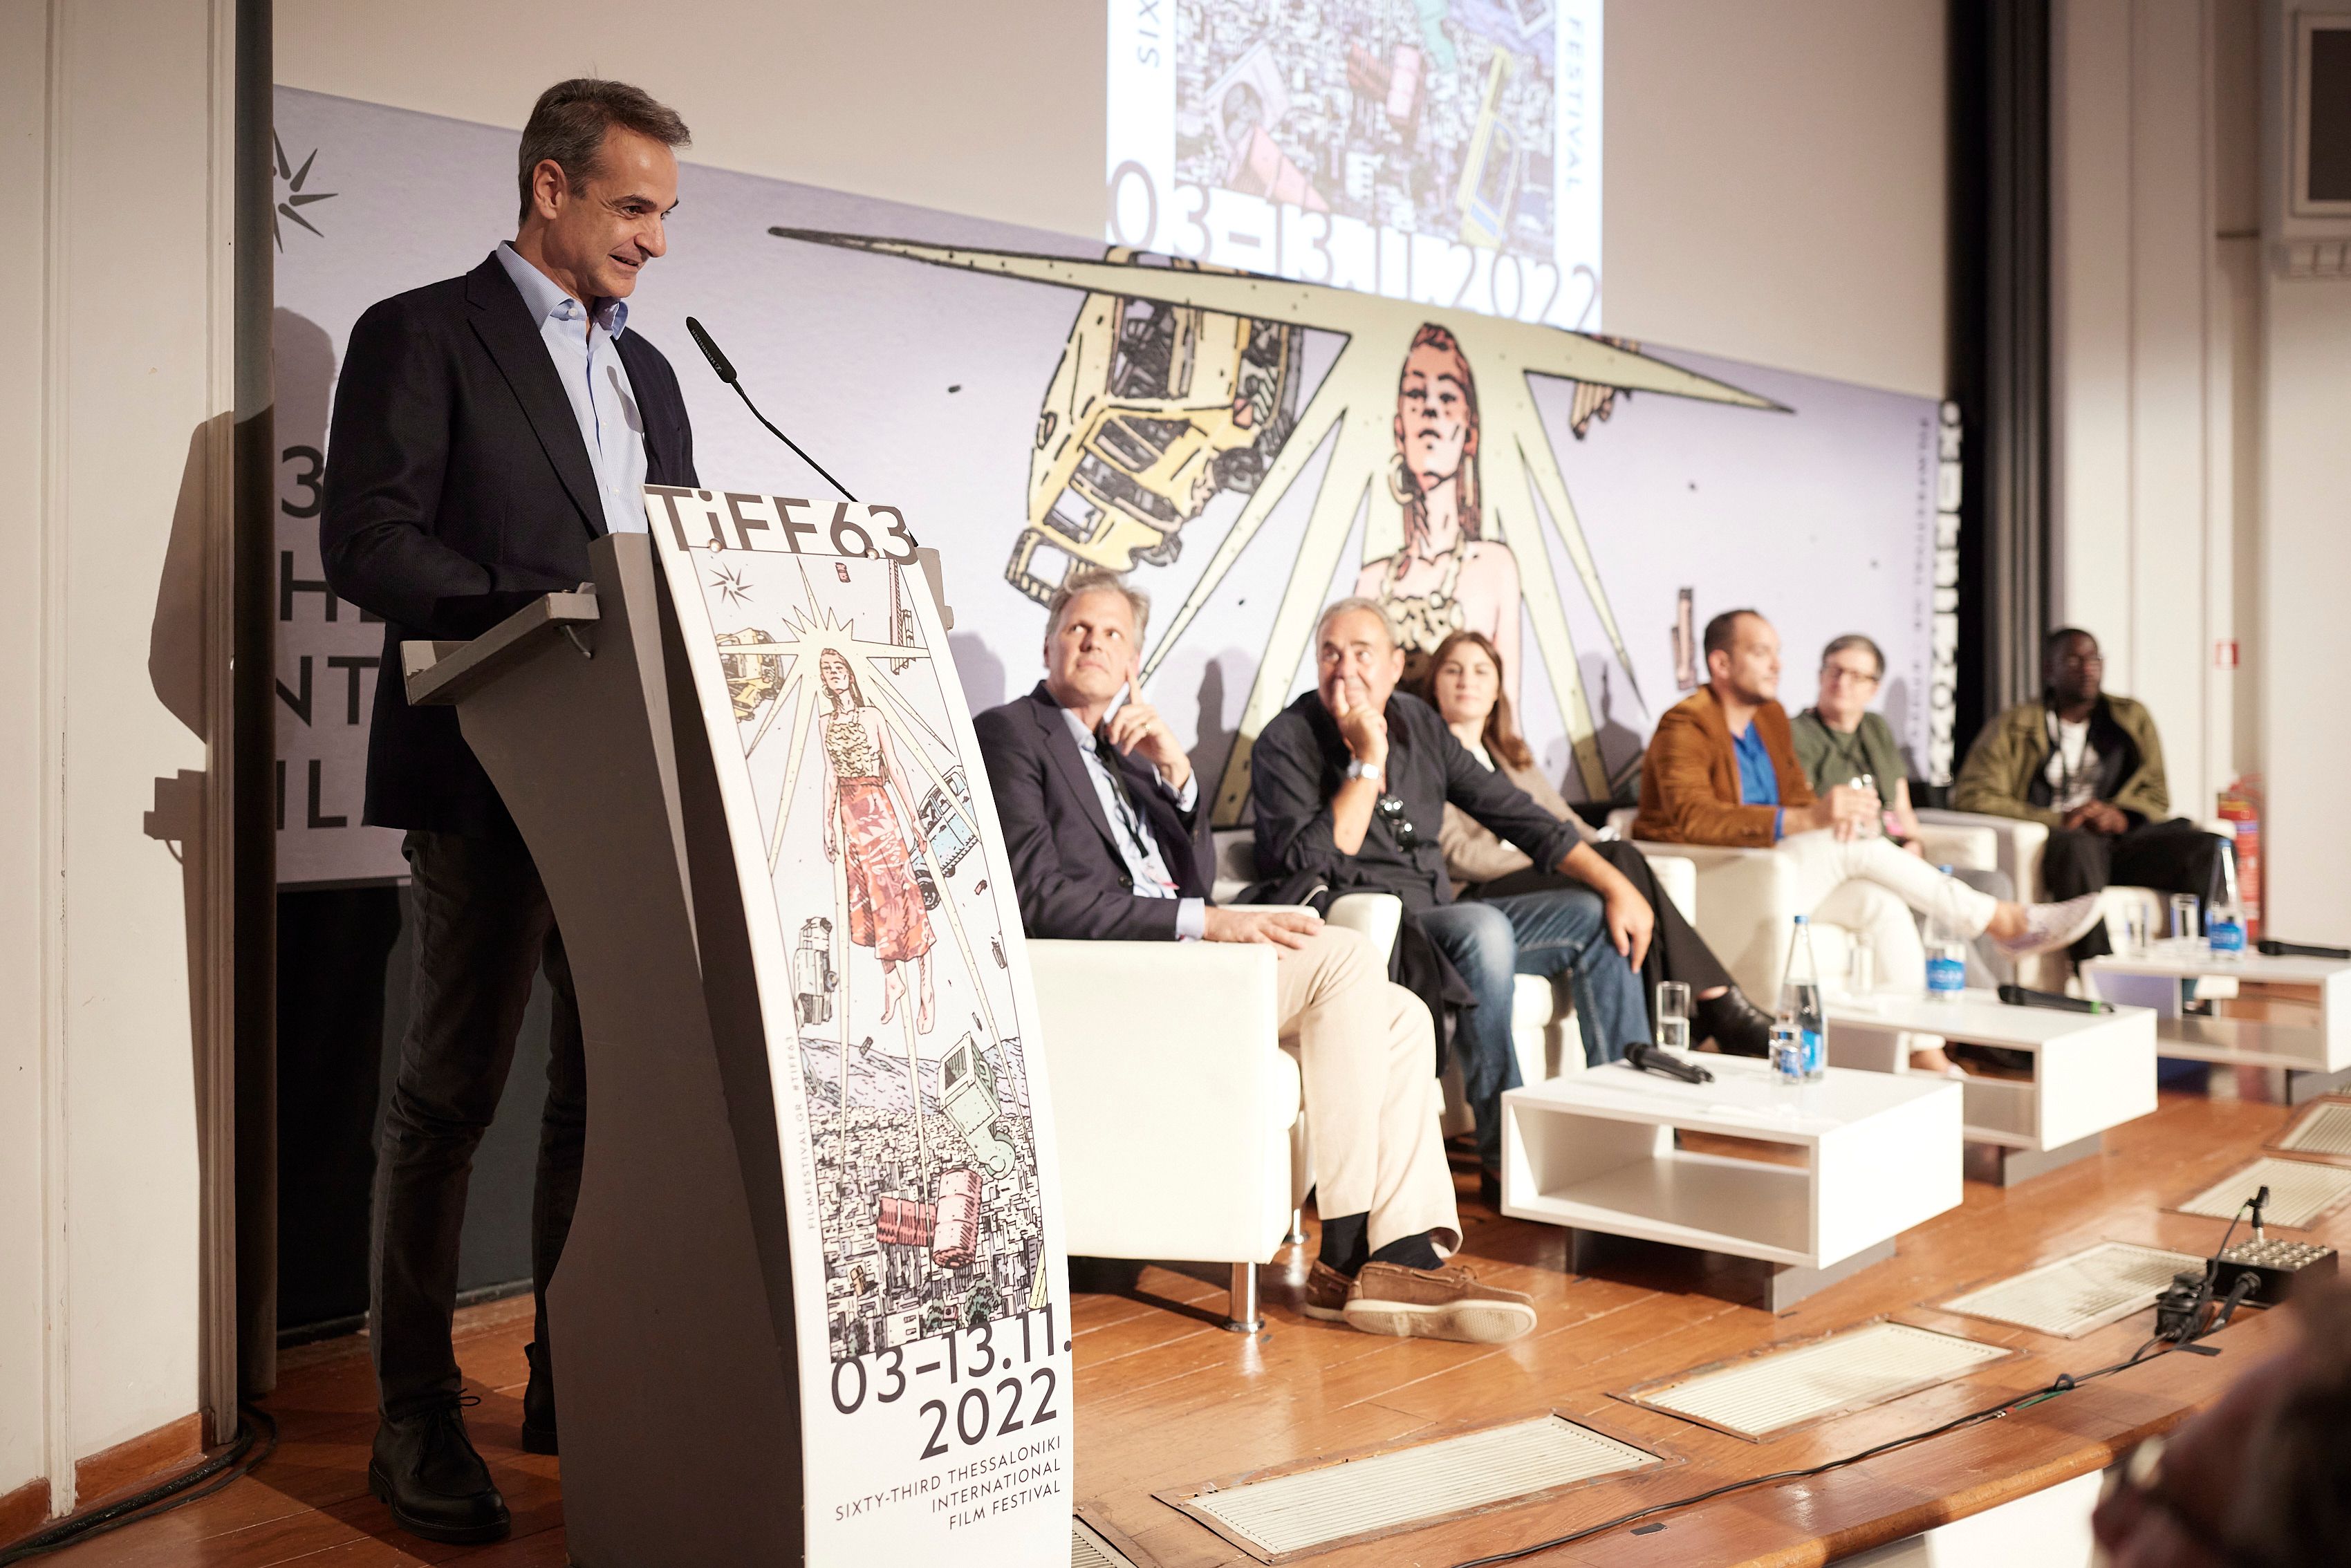 Μητσοτάκης: «Το ΦΚΘ είναι ο ακρογωνιαίος λίθος της σύγχρονης ελληνικής κινηματογραφικής βιομηχανίας»